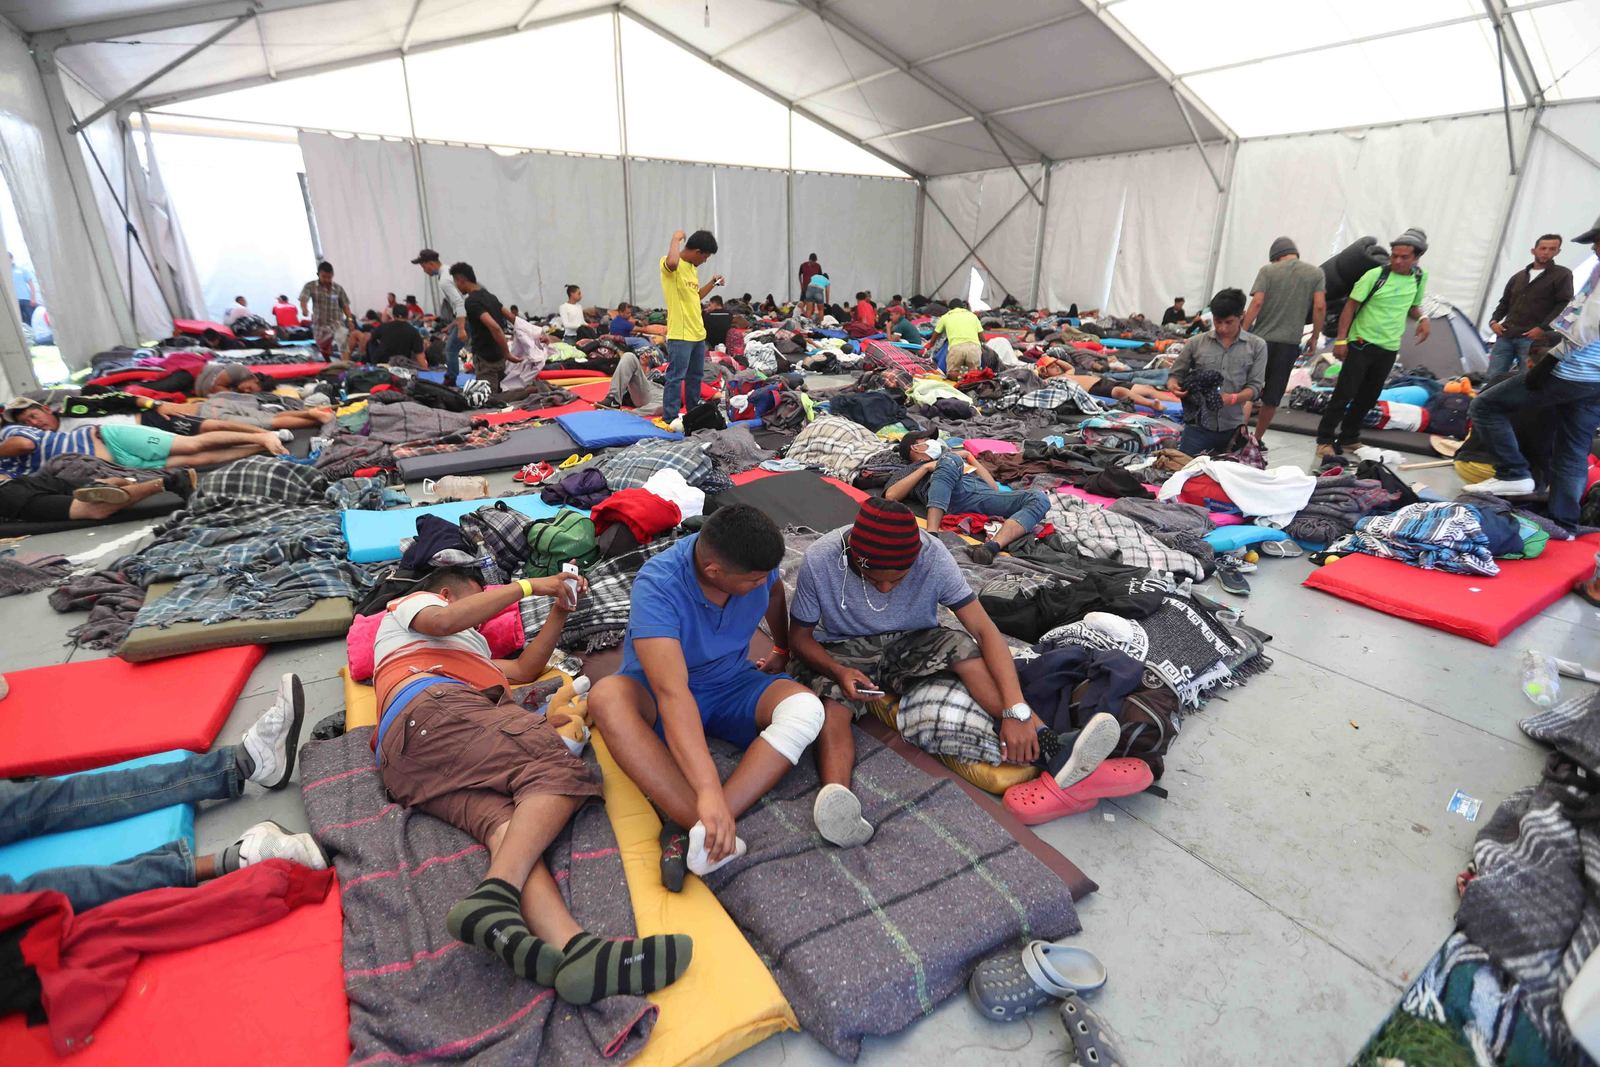 Acuerdo. Solicitantes de asilo no esperarán en un centro de detención en EU, será entregado a las autoridades mexicanas. (AGENCIAS)